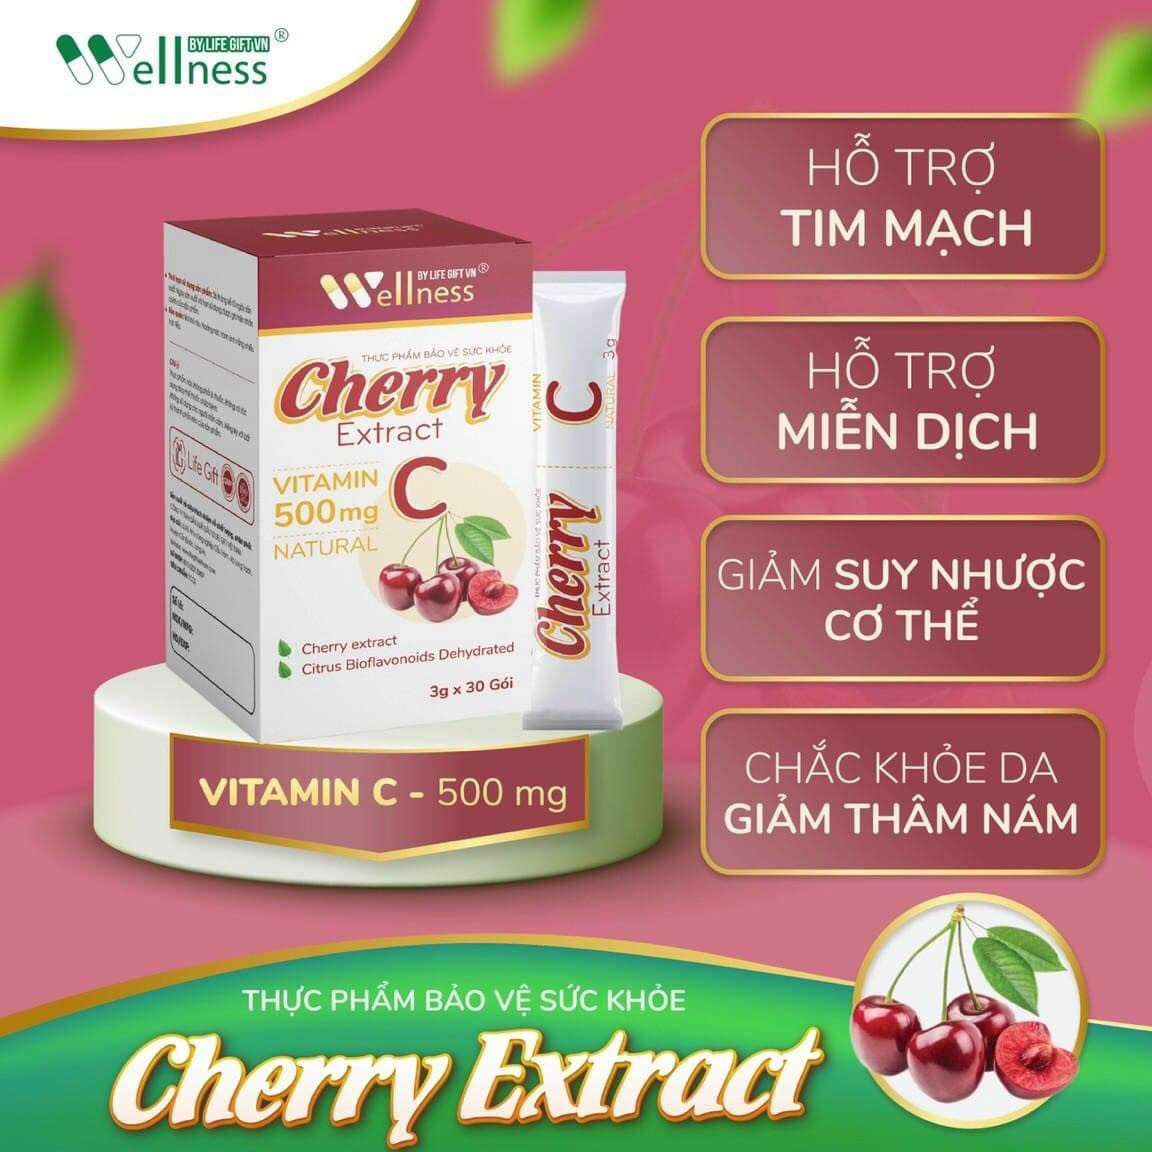 Thực phẩm bảo vệ sức khỏe VITAMINC 500Mg Cherry Extract - AMIONE-VN01